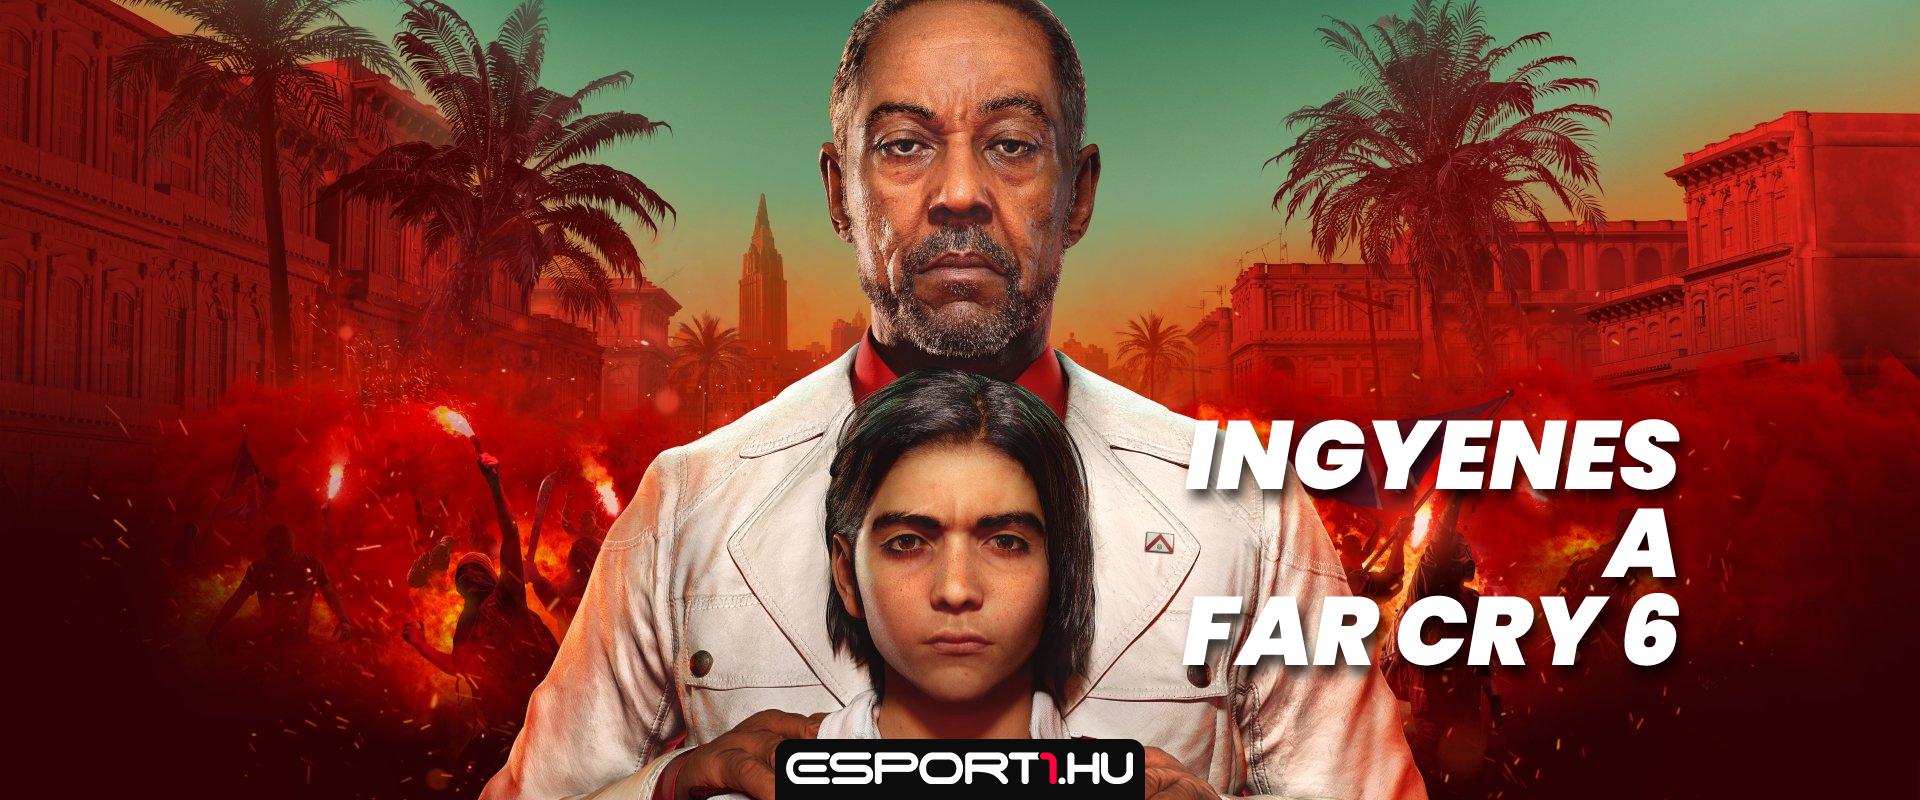 Holnaptól ingyen játszhatsz a Far Cry 6-tal